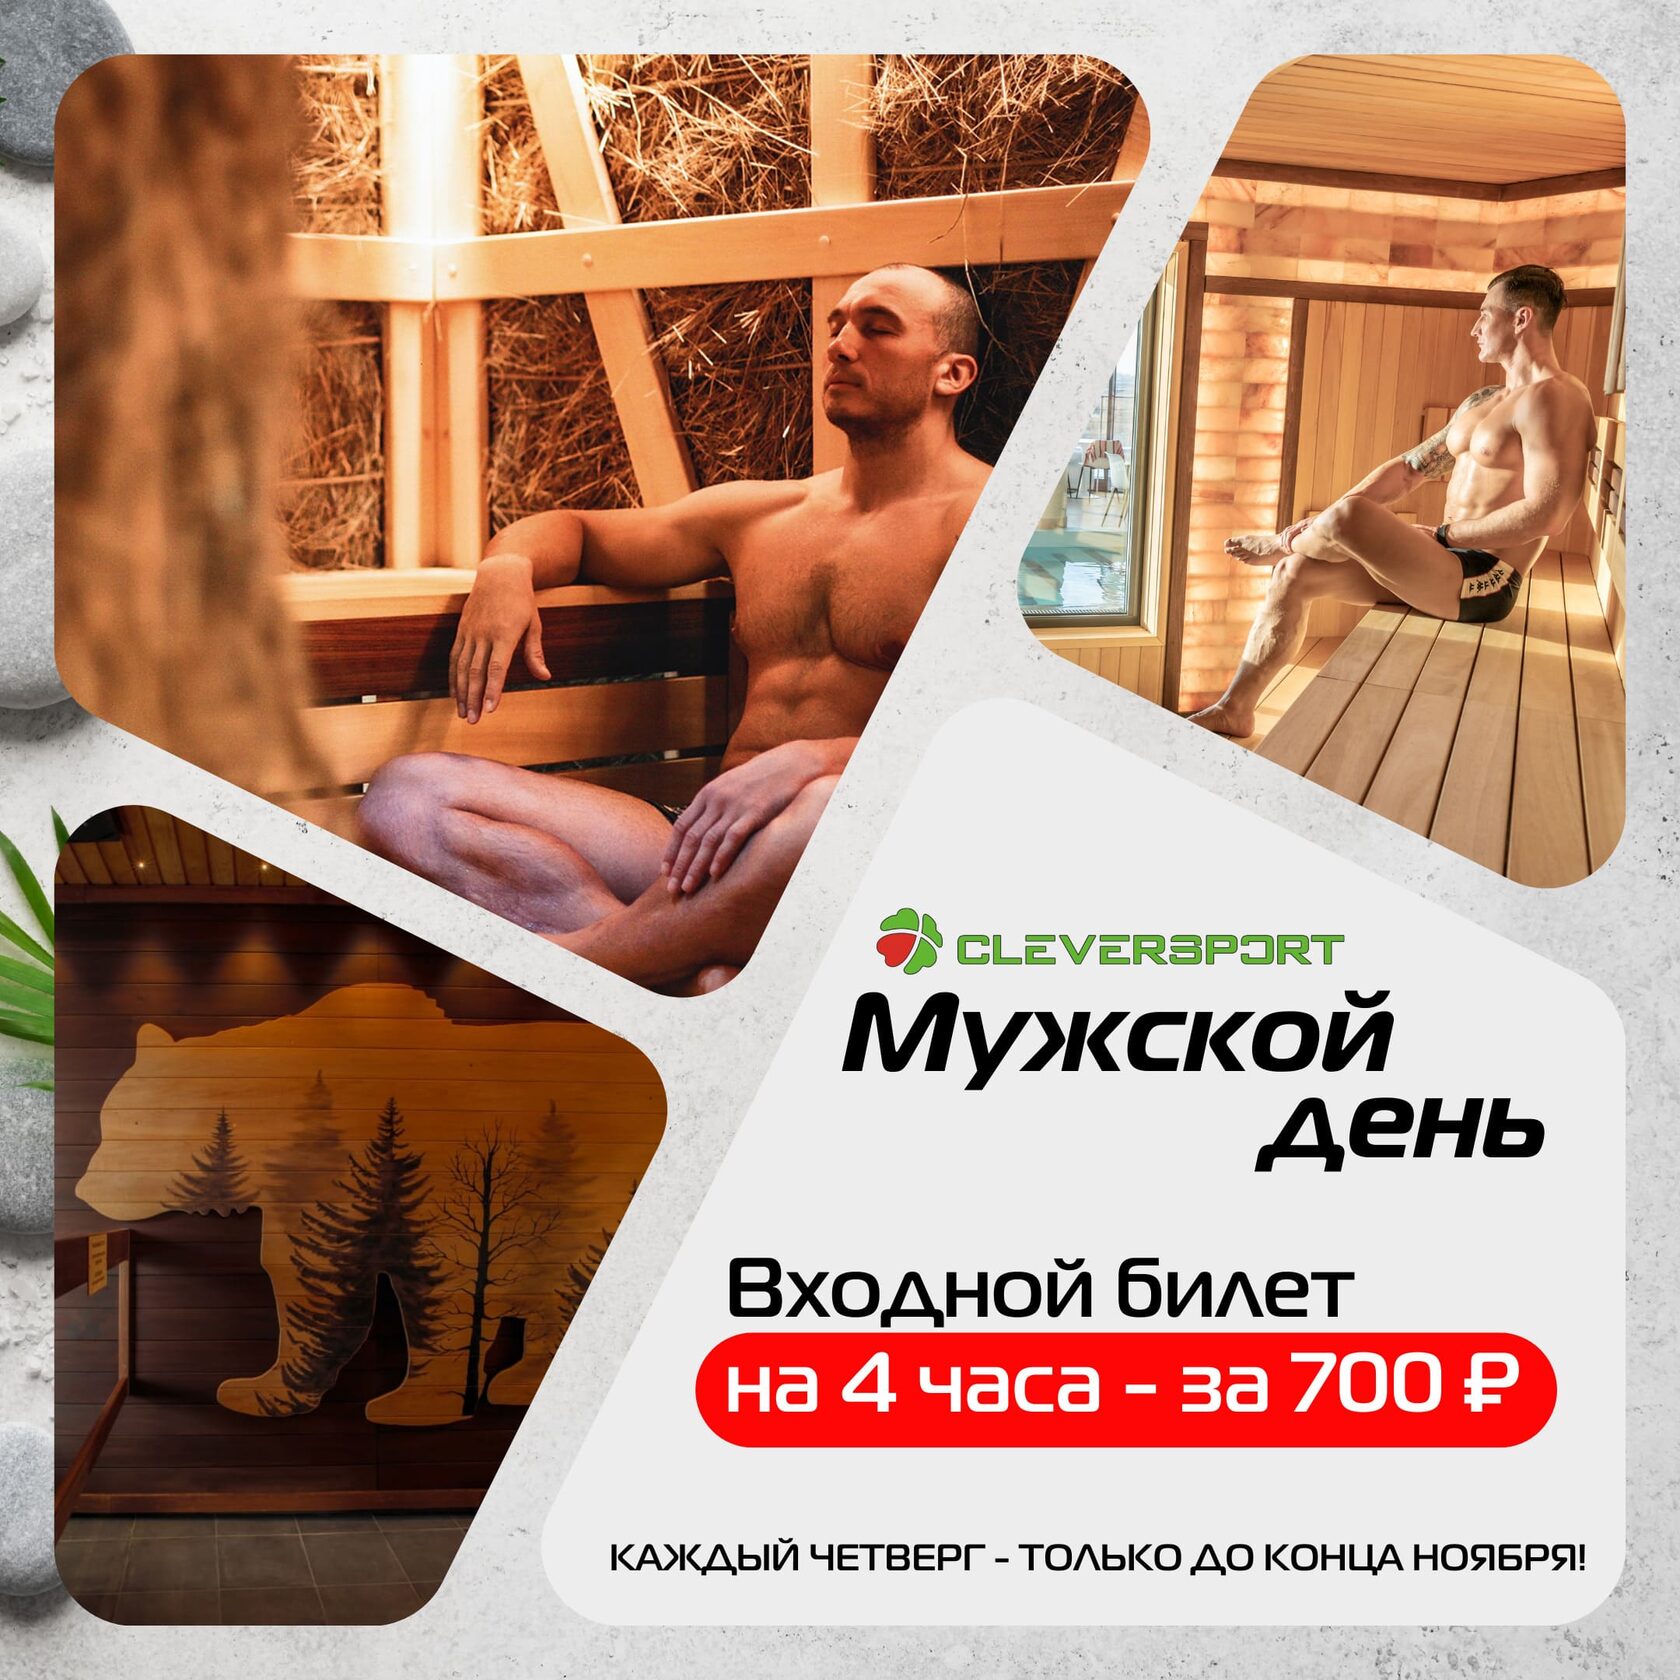 Каждый четверг в термальном комплексе для мужчин действует акция на входной билет на 4 часа за 700 рублей